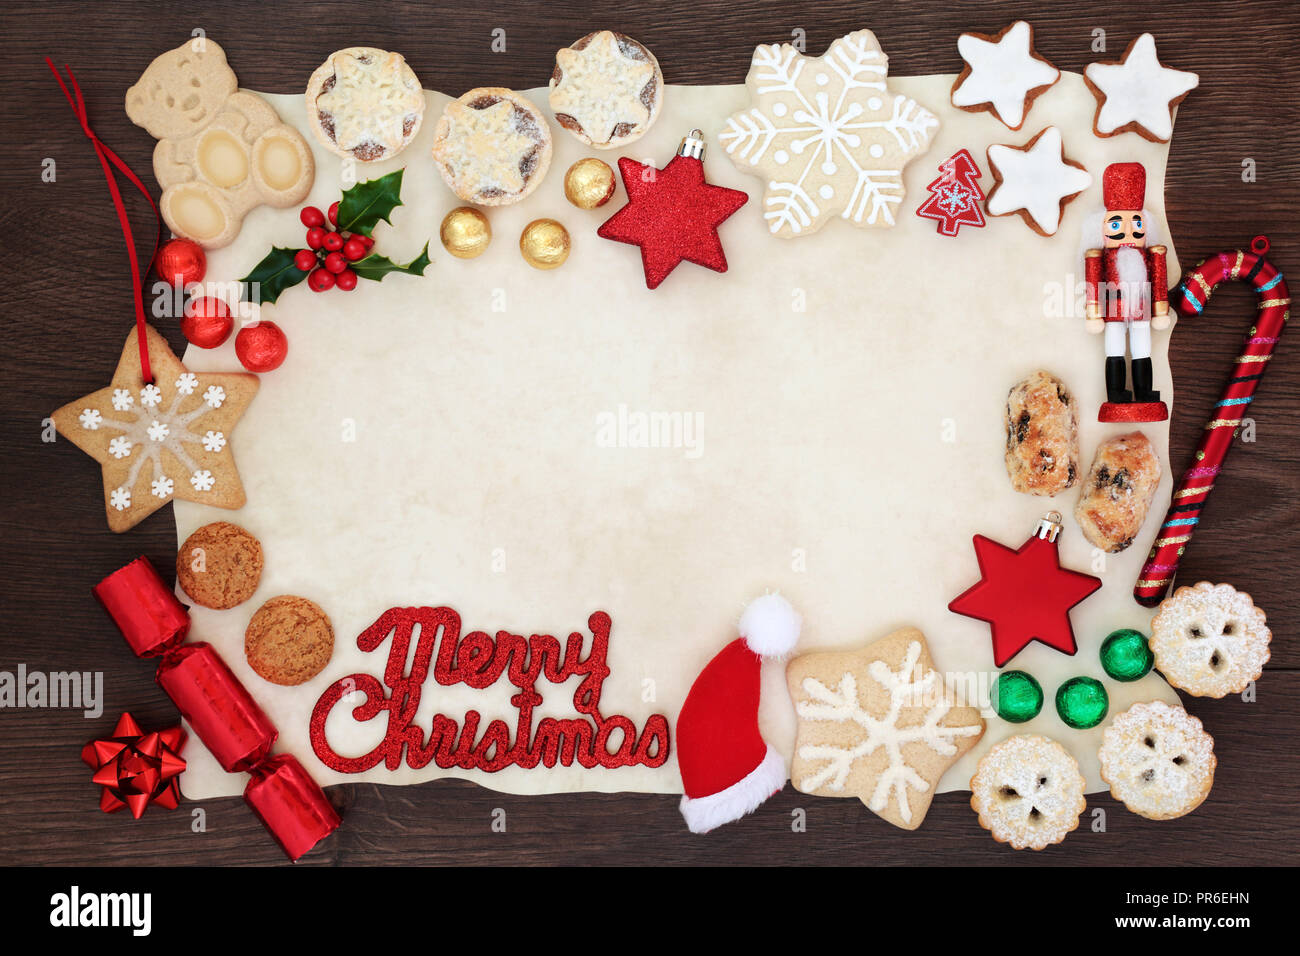 Joyeux Noël arrière-plan frontière avec l'inscription, des décorations de l'arbre, des biscuits, des gâteaux, de la flore et d'hiver en aluminium sur le papier sulfurisé sur bois rustique Banque D'Images